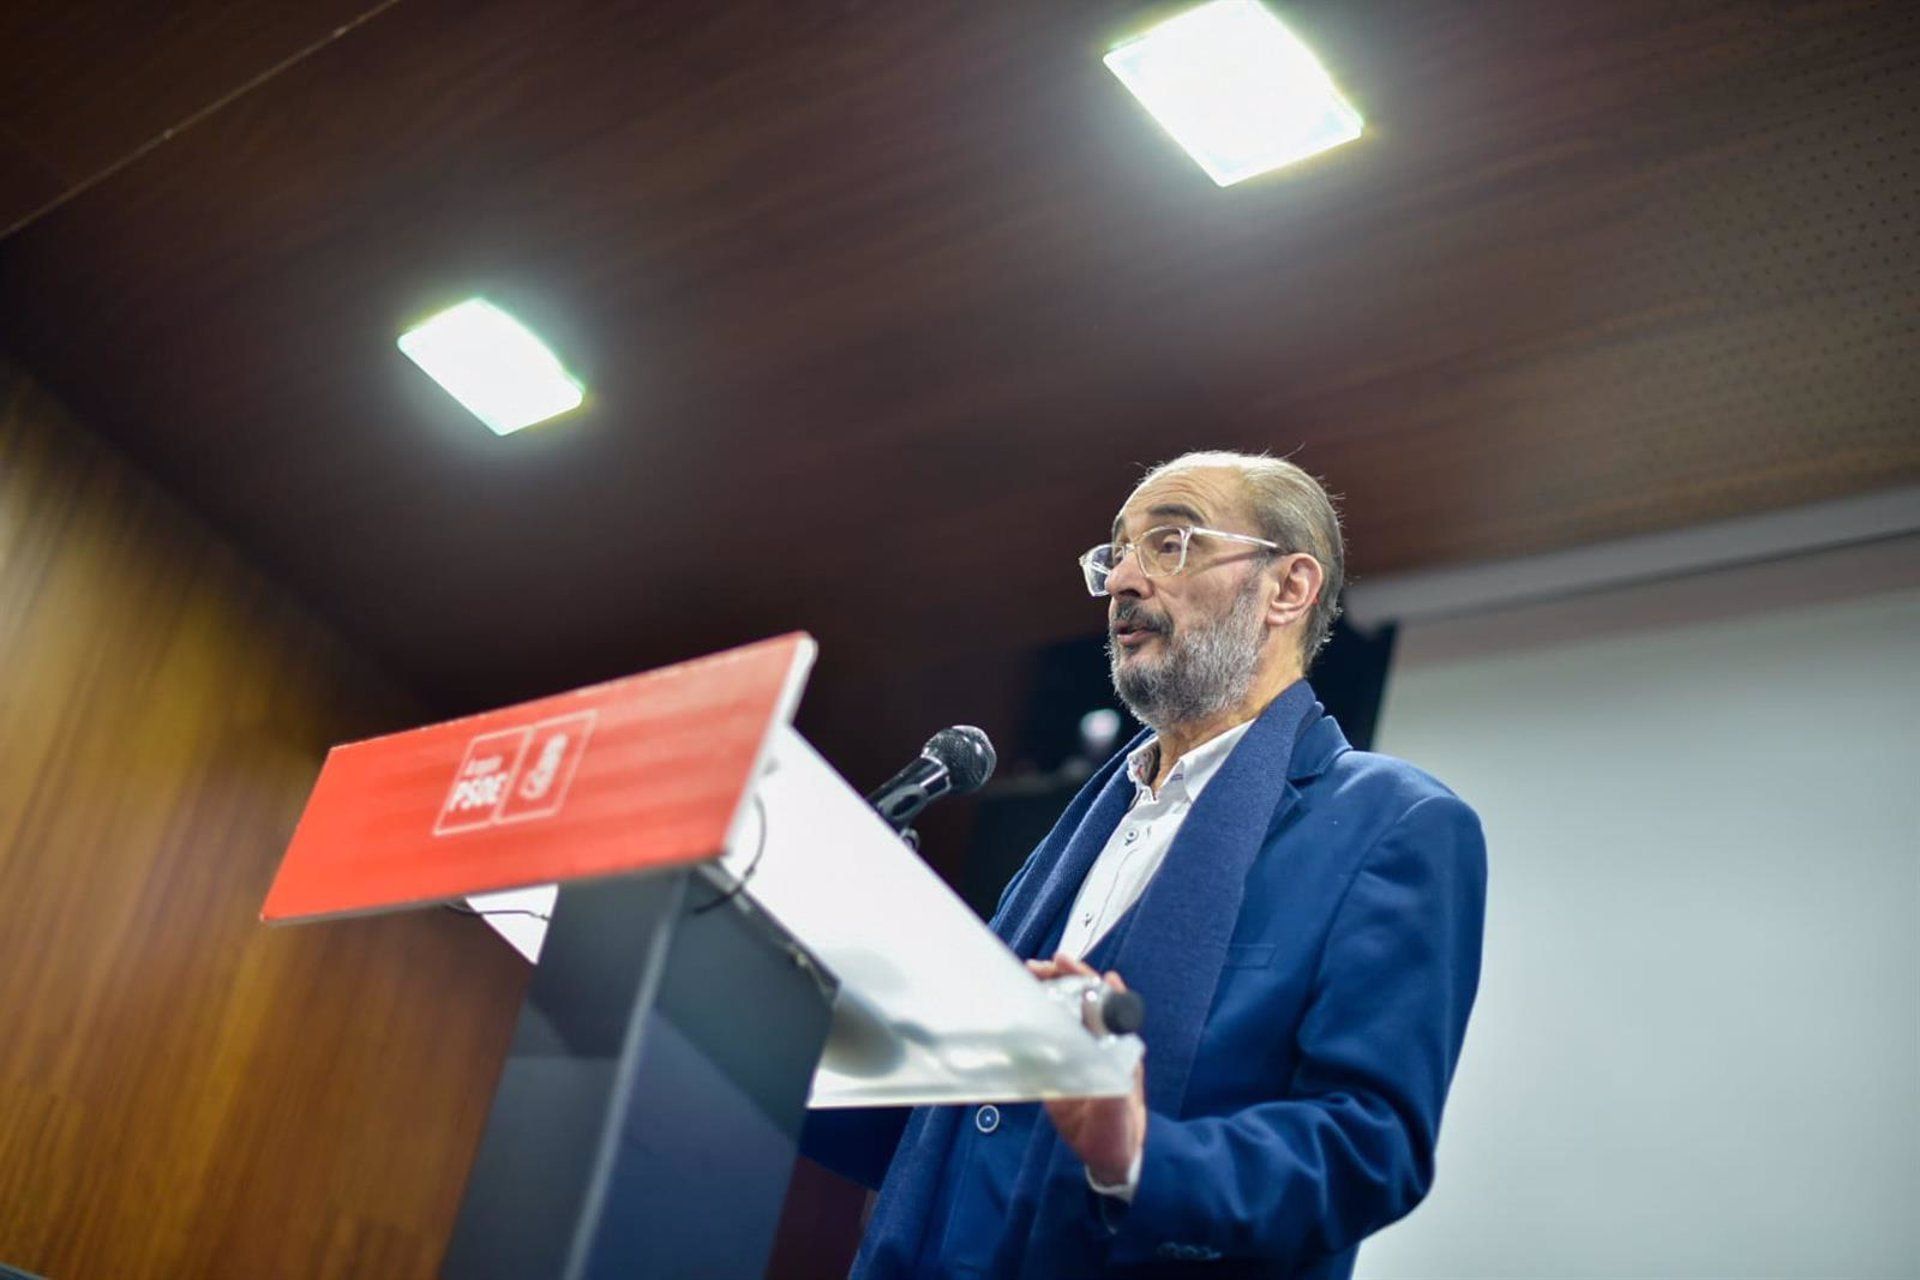 Lambán expresa su respeto por la carta de Sánchez y urge a poner fin a una “deriva lamentable” en la política española